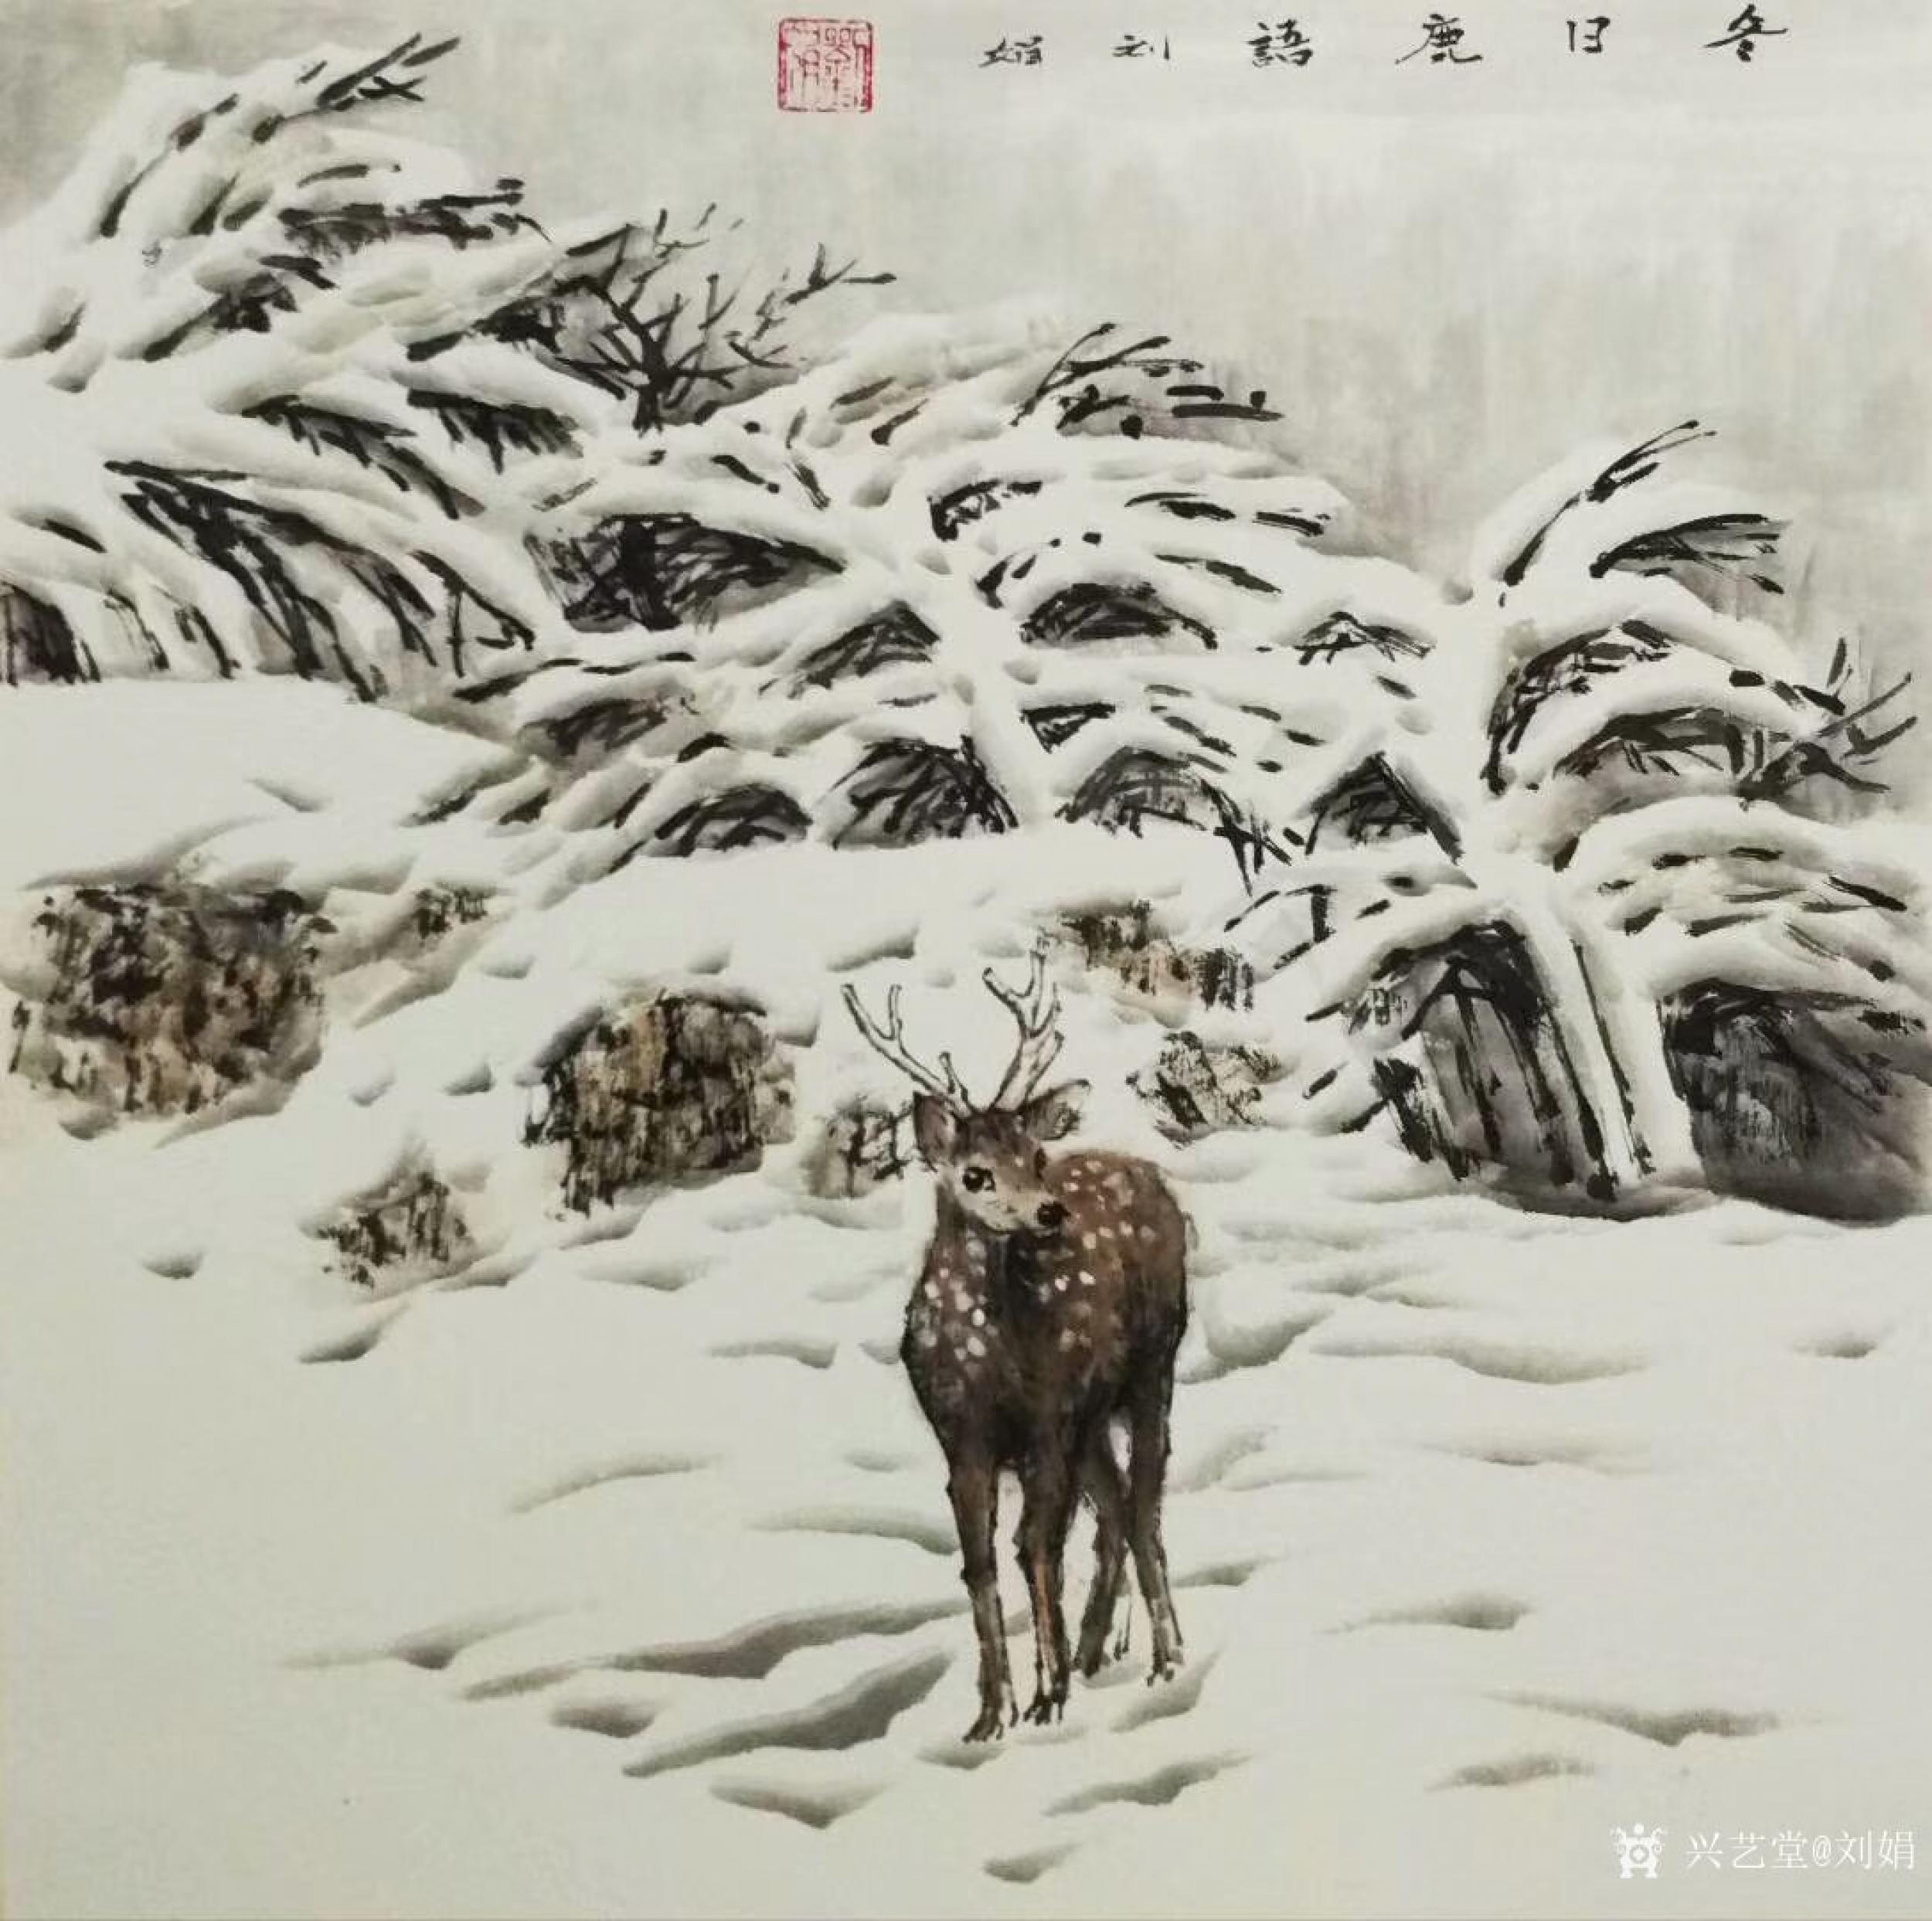 刘娟日志-《鹿溪霁雪》《冬日鹿语》国画动物画鹿,新作,四尺斗方68*68